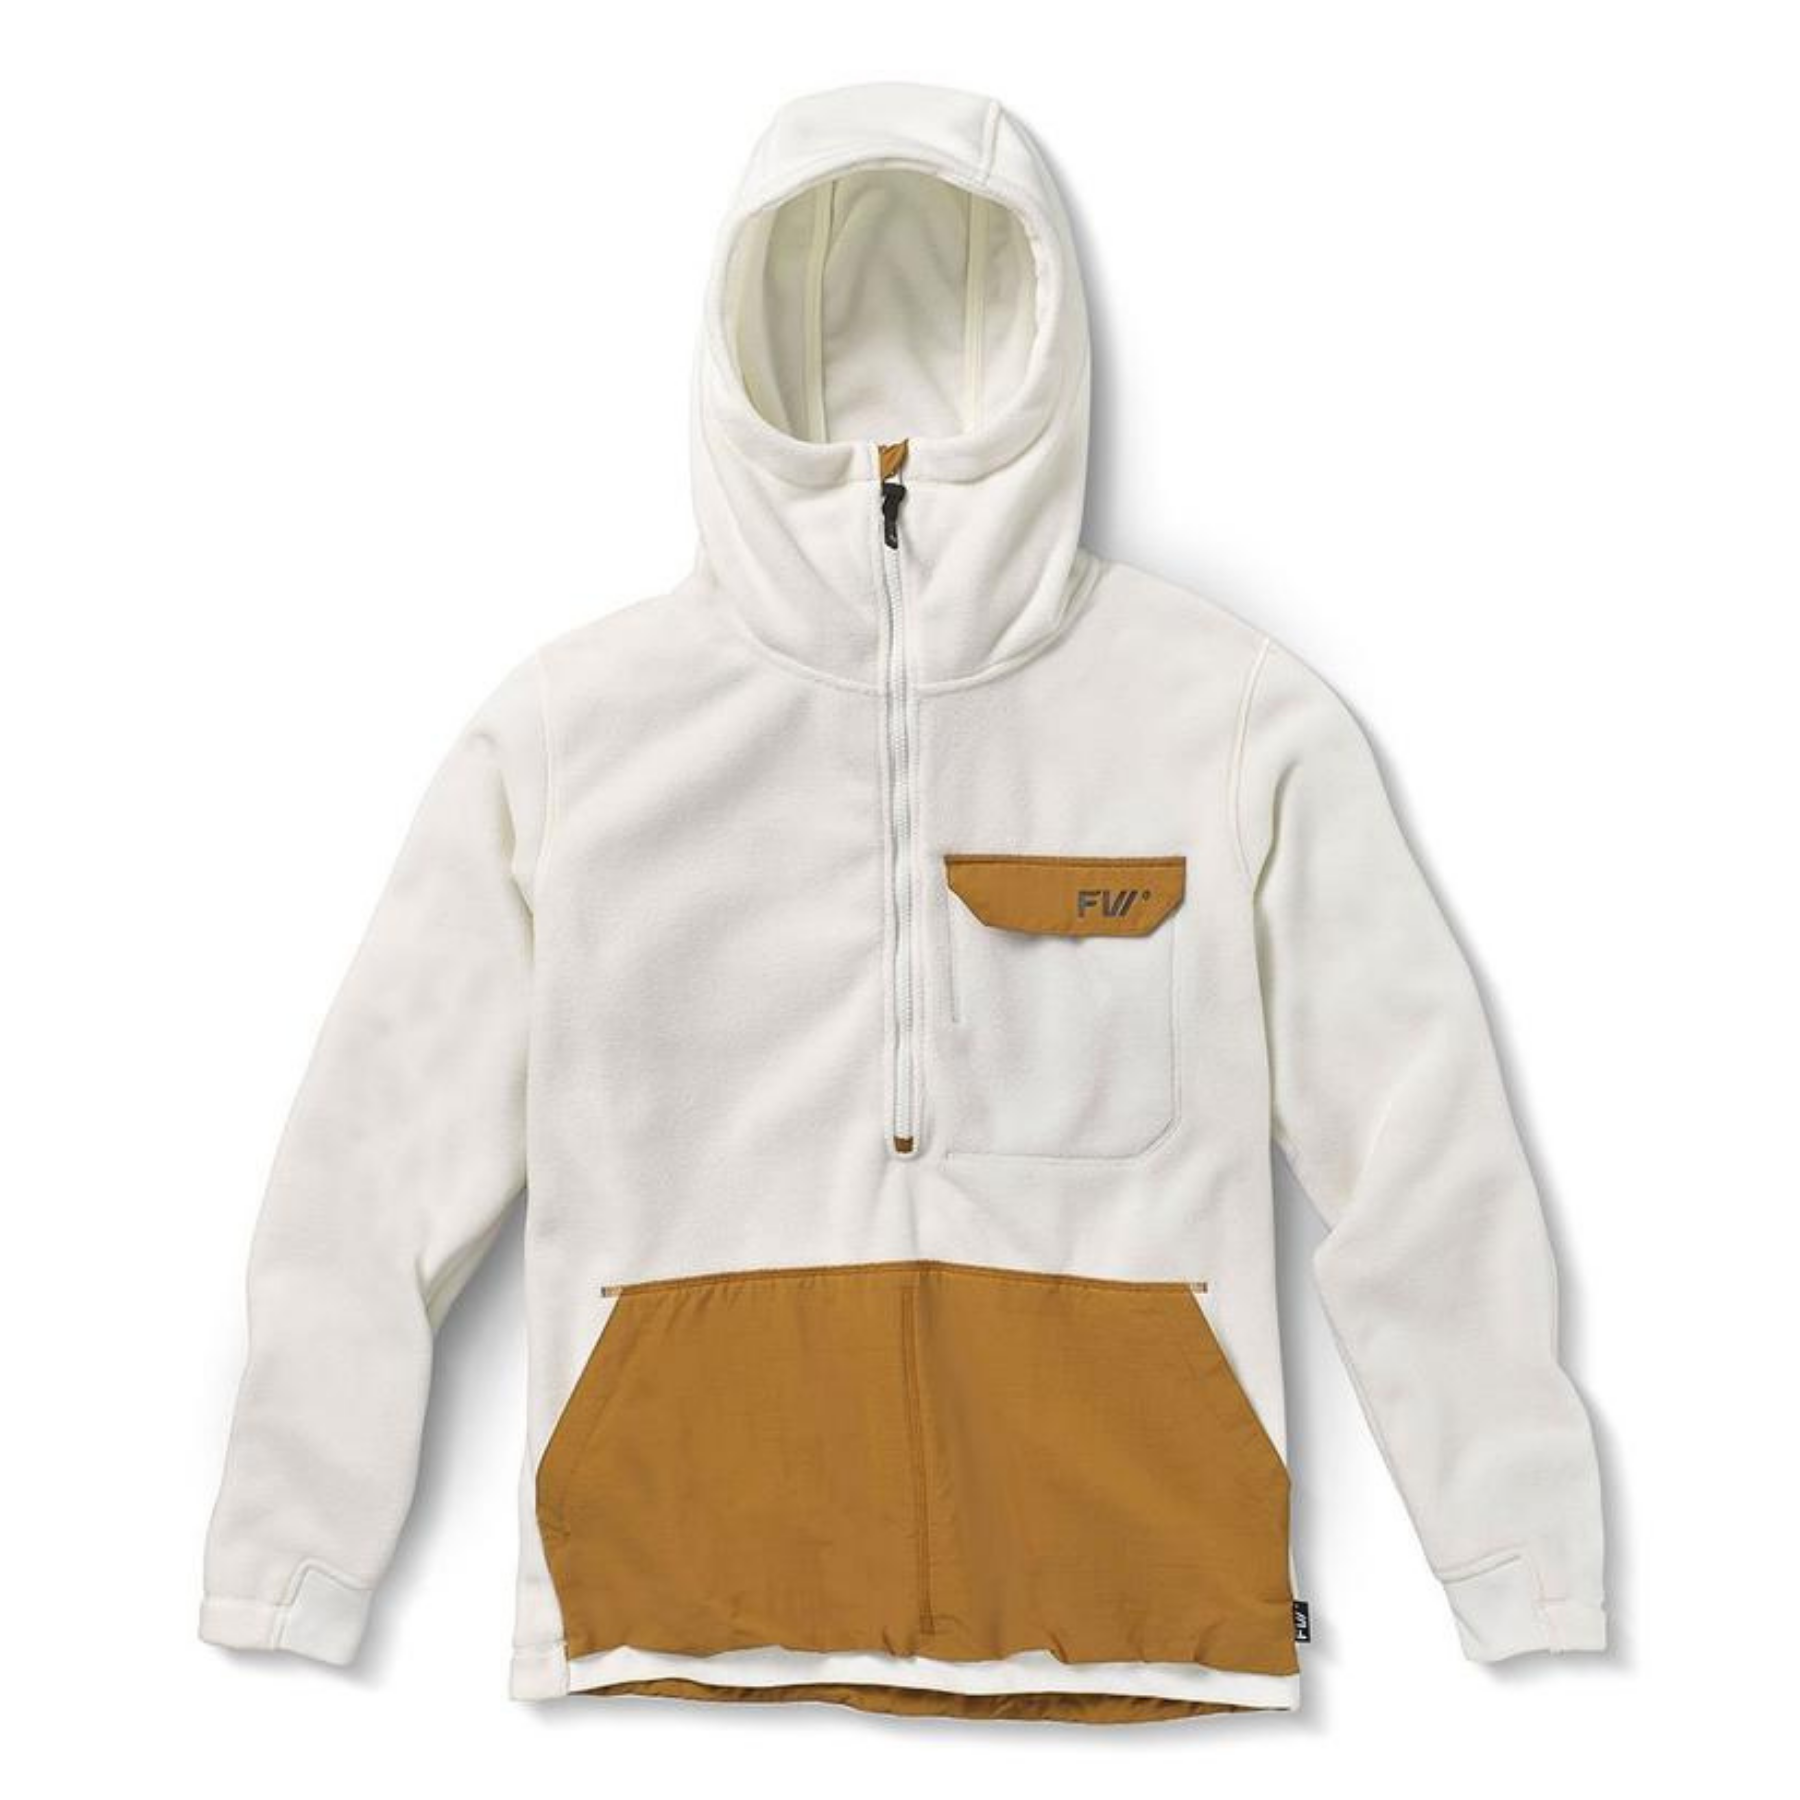 FW Apparel Catalyst Fleece Hoodie - Fleece jacket - Men's